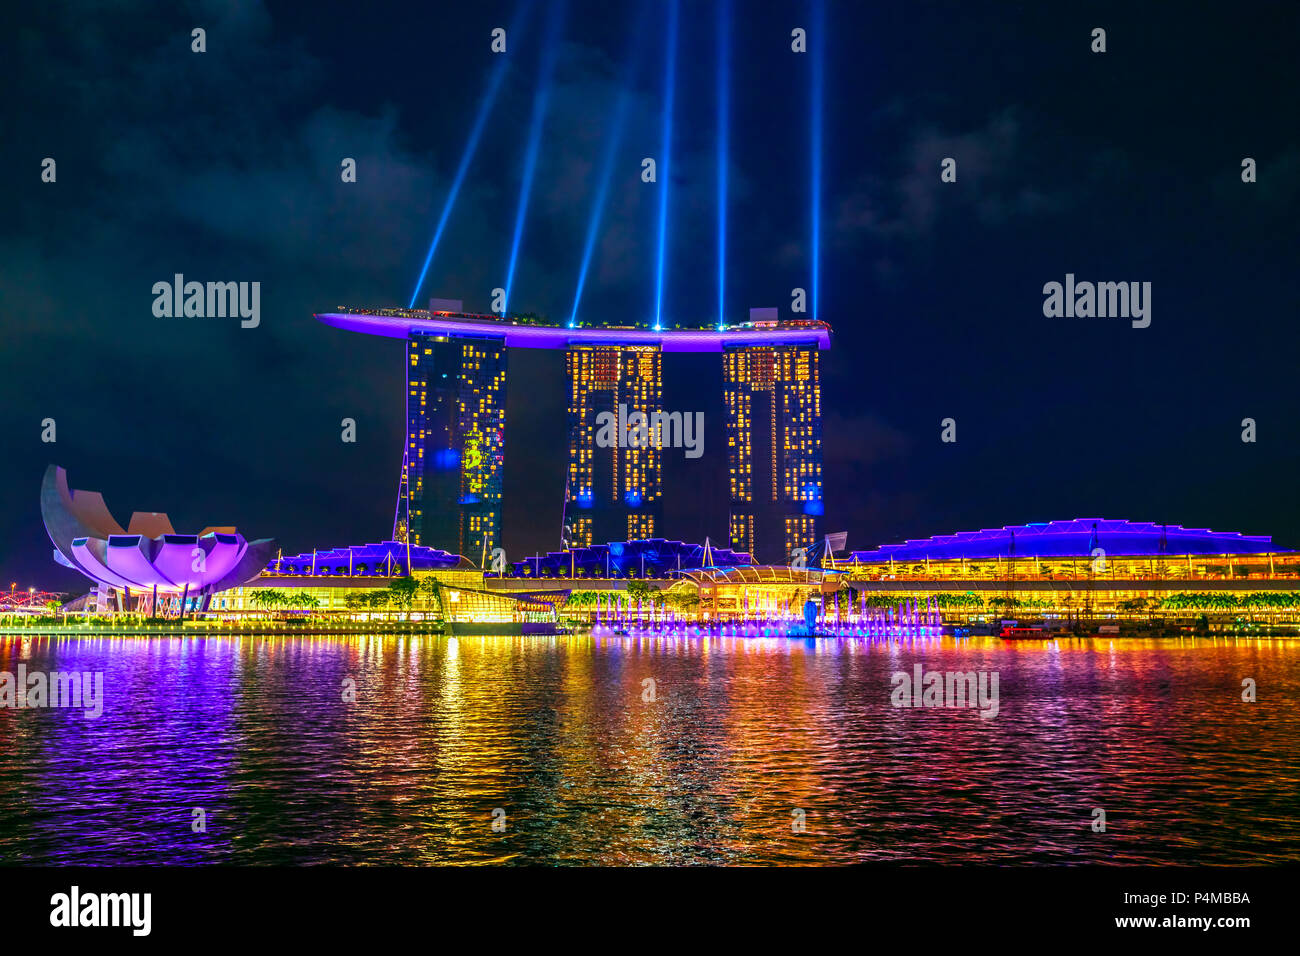 Singapour - Avril 27, 2018 : show laser dans la nuit au-dessus de l'hôtel Marina Bay Sands Casino et musée ArtScience au bord de Marina Bay à Singapour. Soirée spectacle gratuit populaires effectuées chaque nuit. Banque D'Images